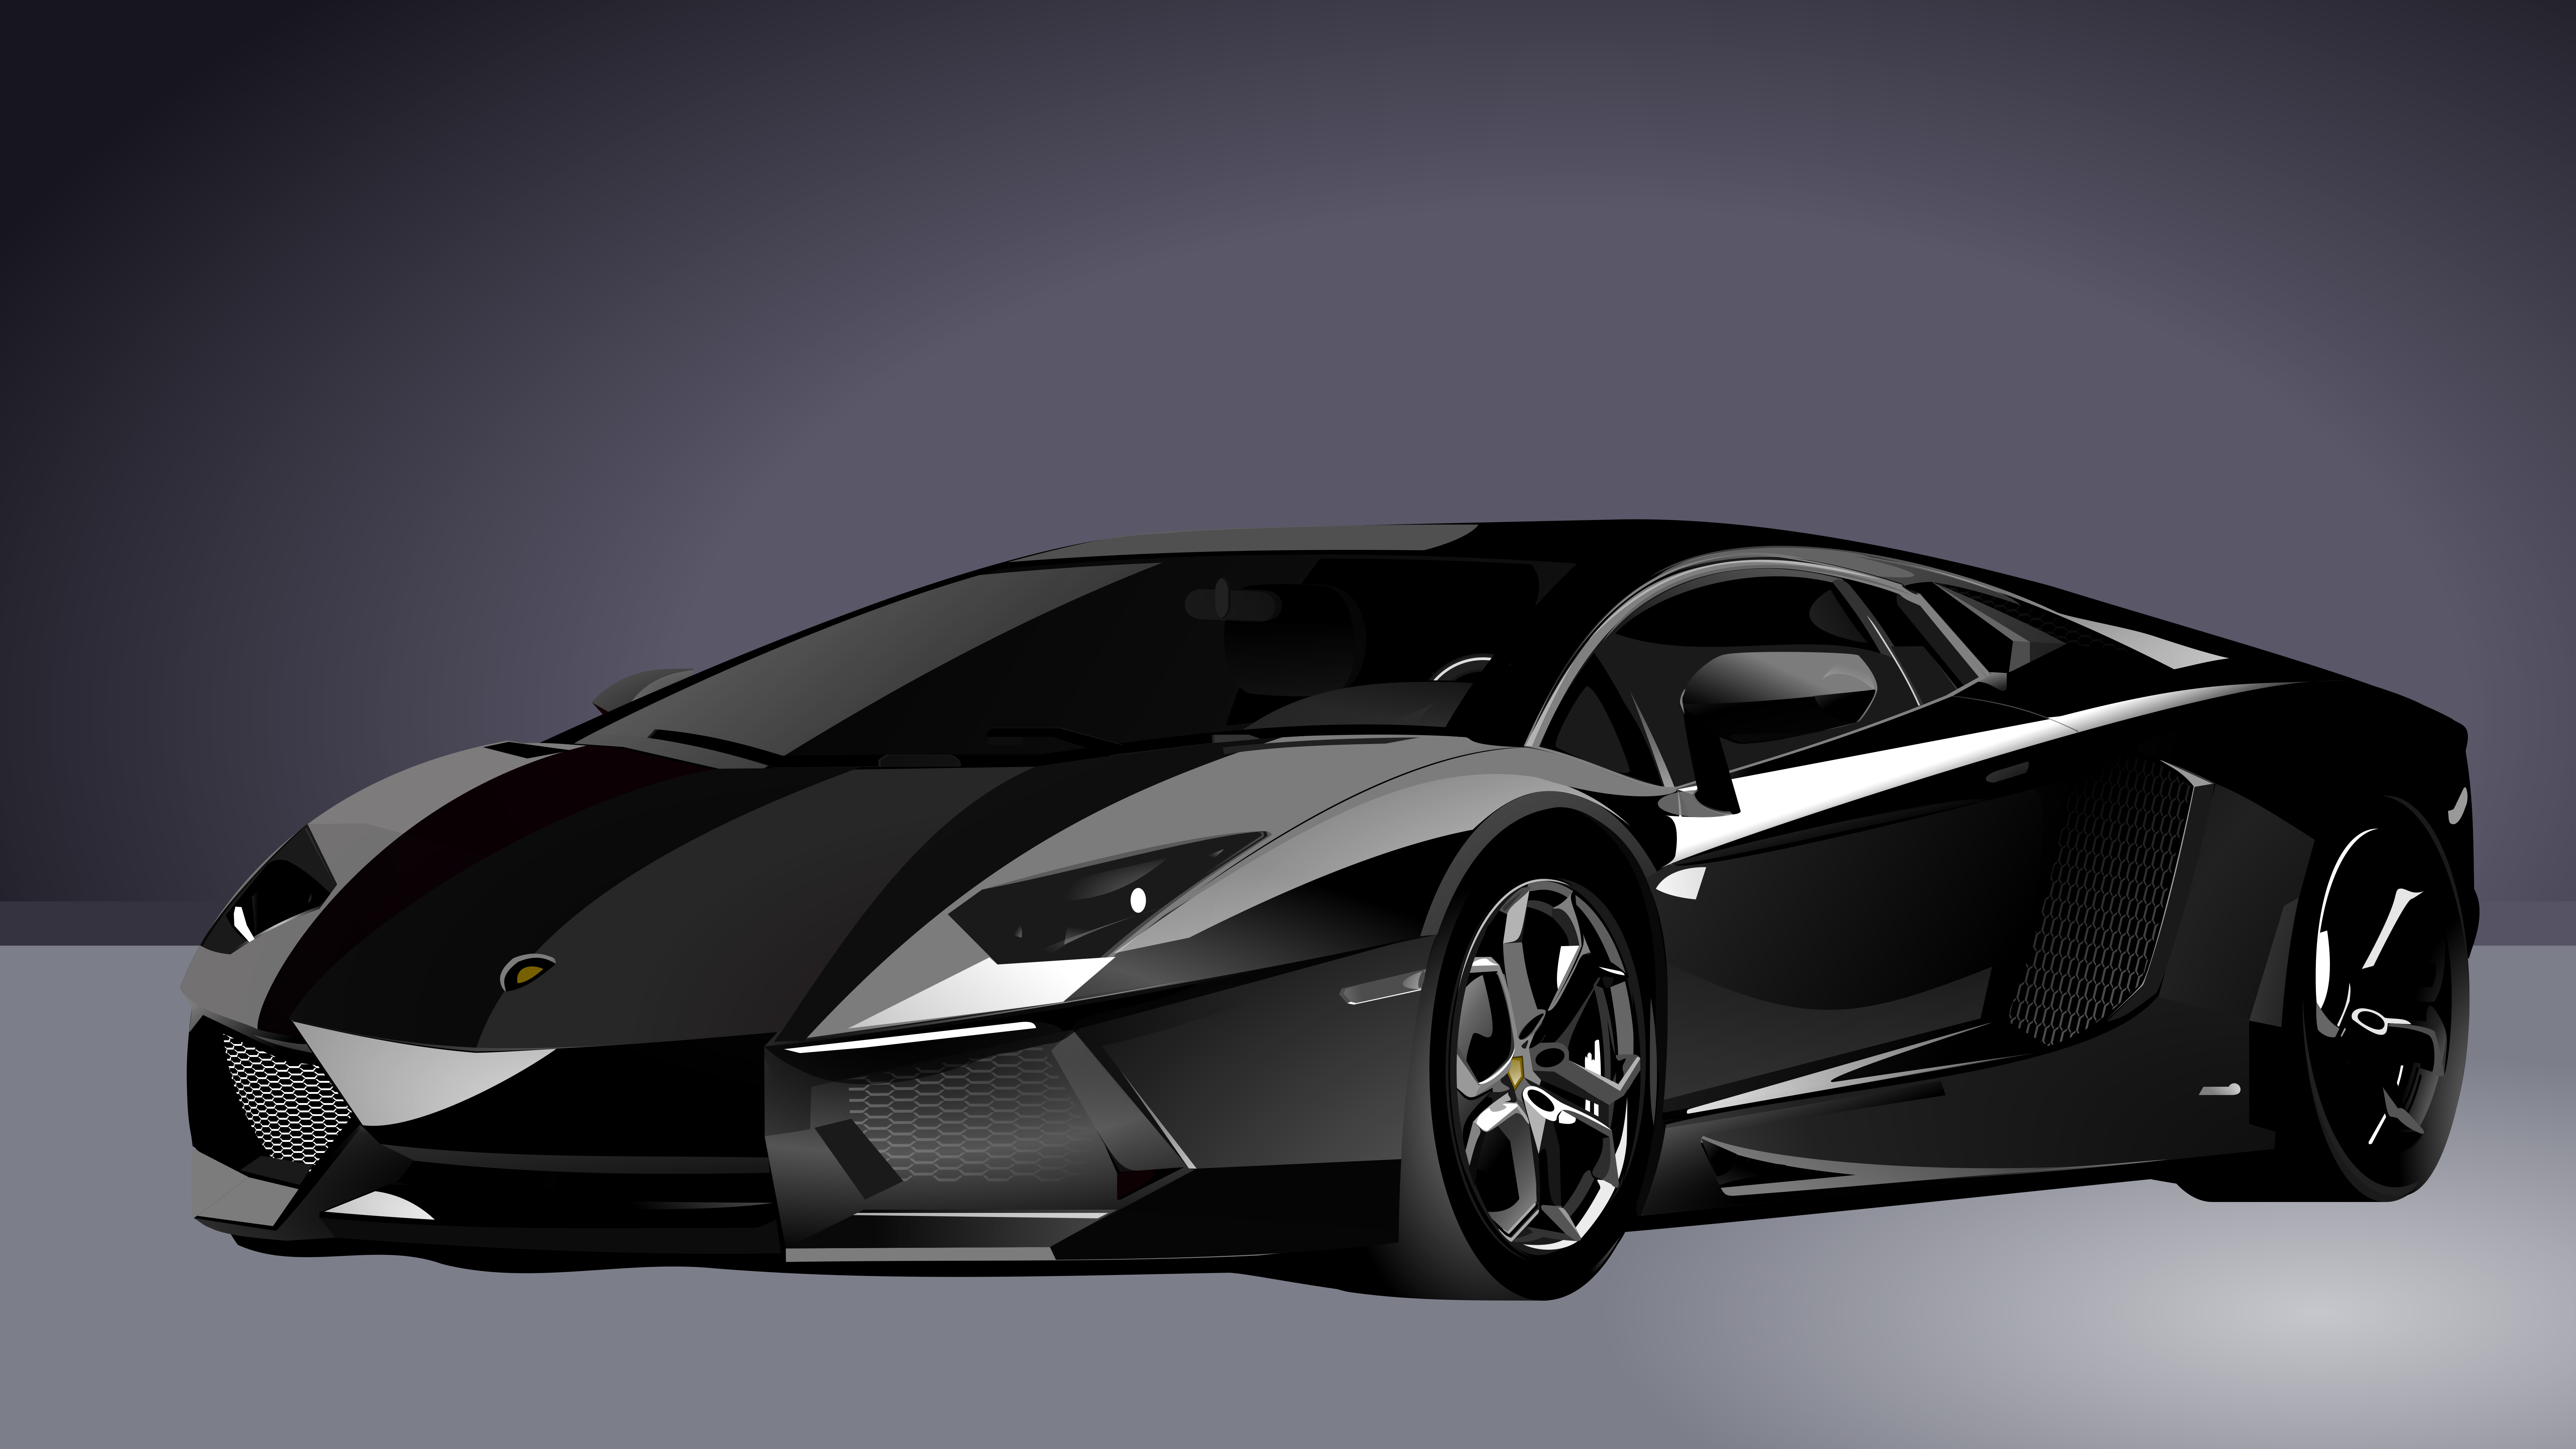 General 7684x4322 car Lamborghini digital art vector